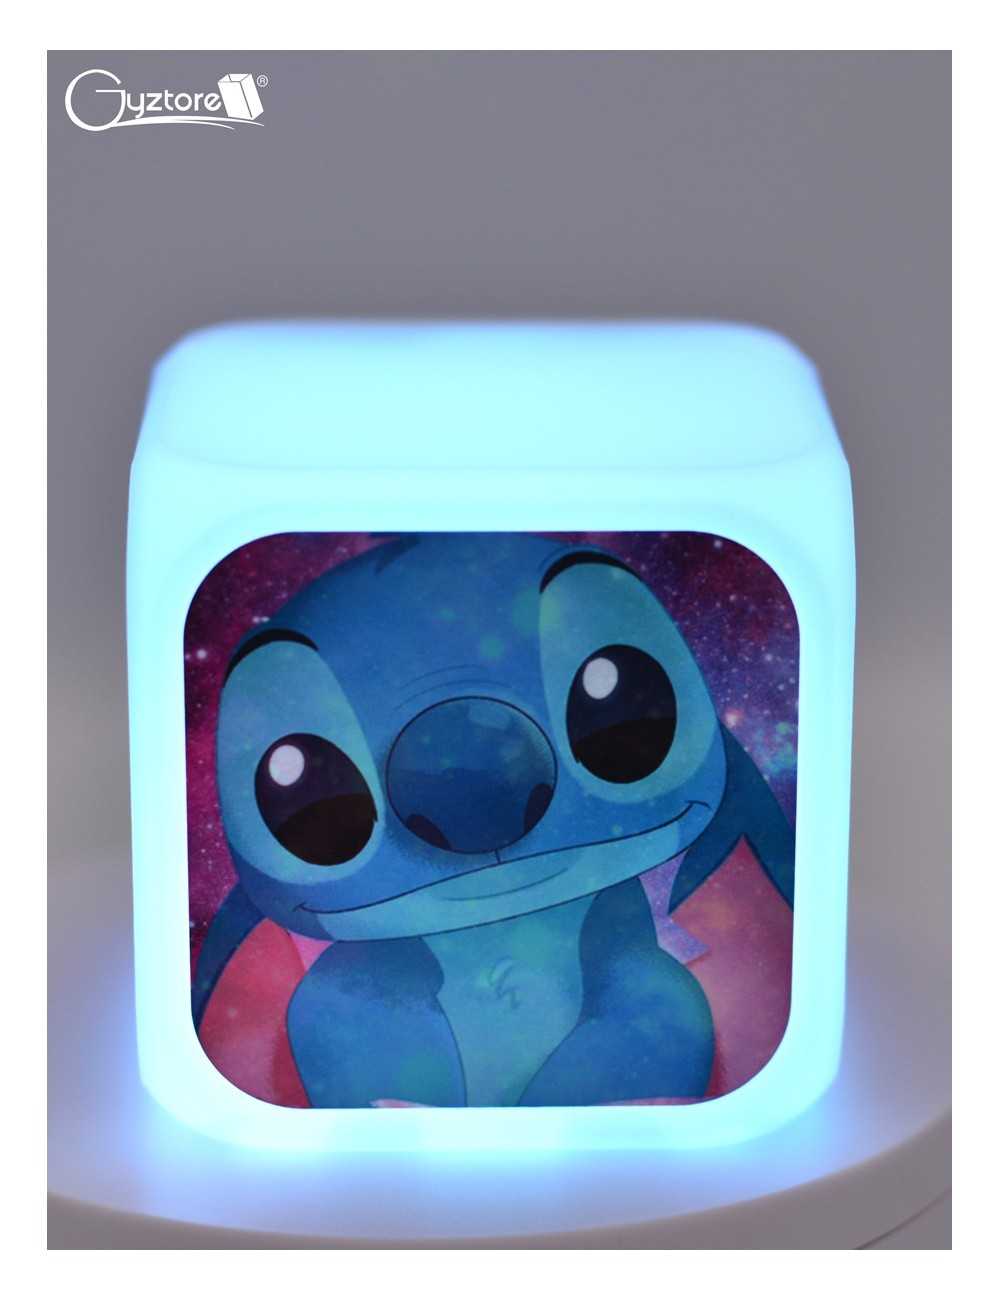 Gyztore - Rlojes cubicos digitales con LED multicolor diseño de Stitch.  Tienen alarma, dan la hora, el día, la fecha y miden la temperatura. 😉  Valor: ₡11,900 😎 Miden 8cm x 8cm.